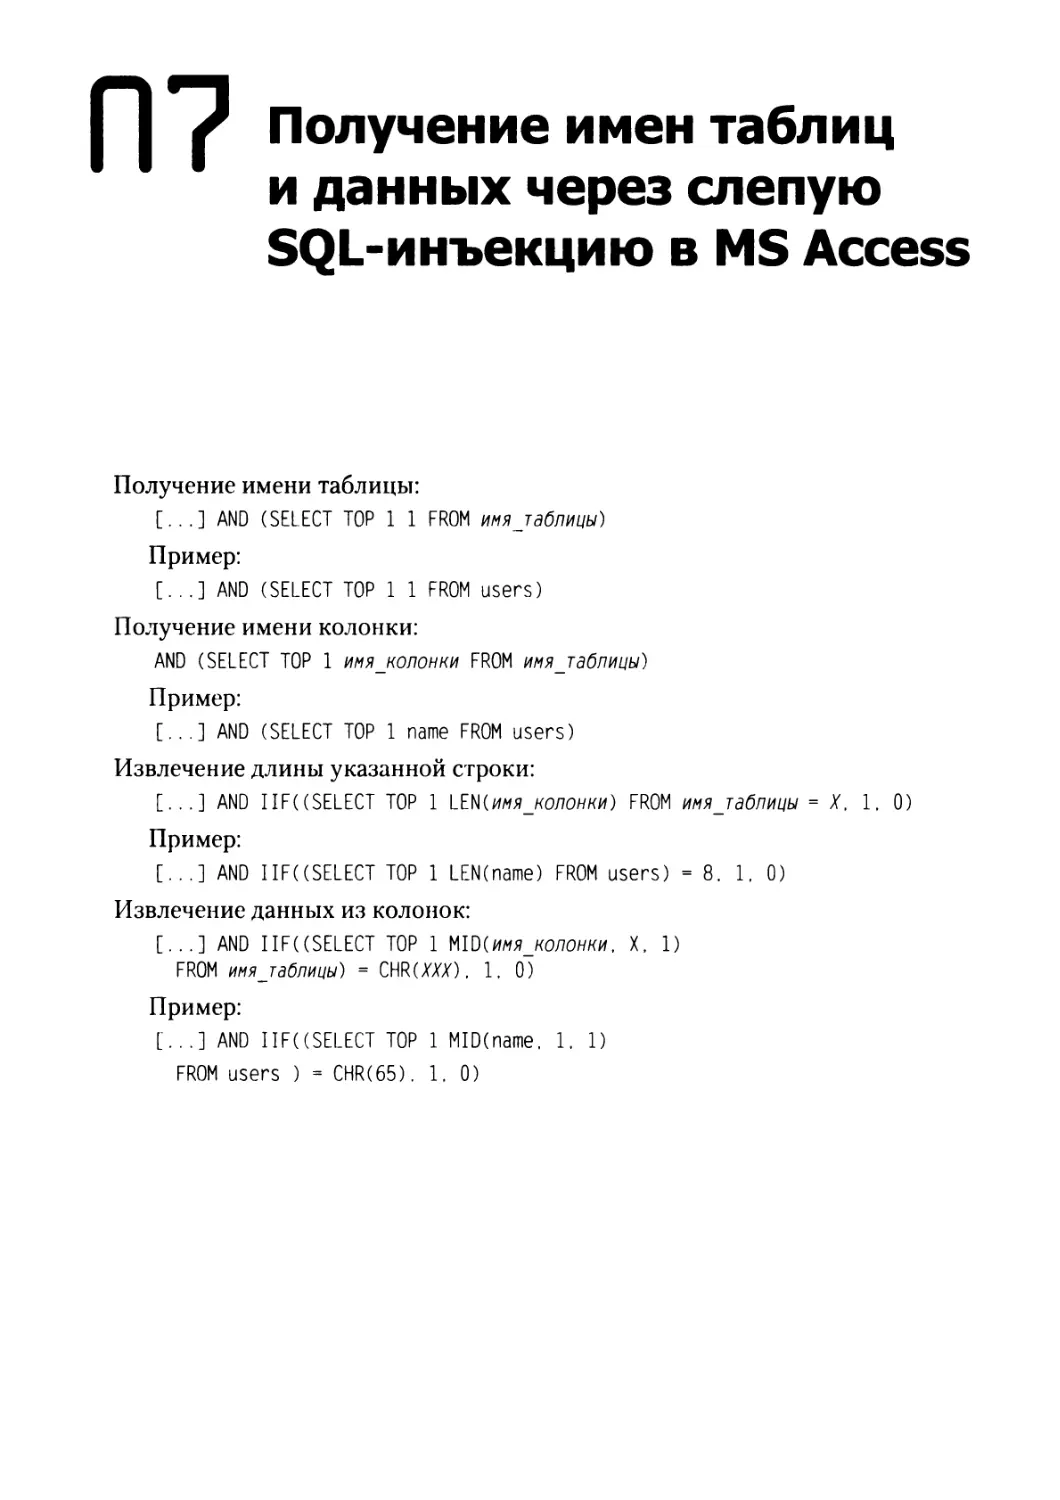 Приложение 7. Получение имен таблиц и данных через слепую SQL-инъекцию в MS Access